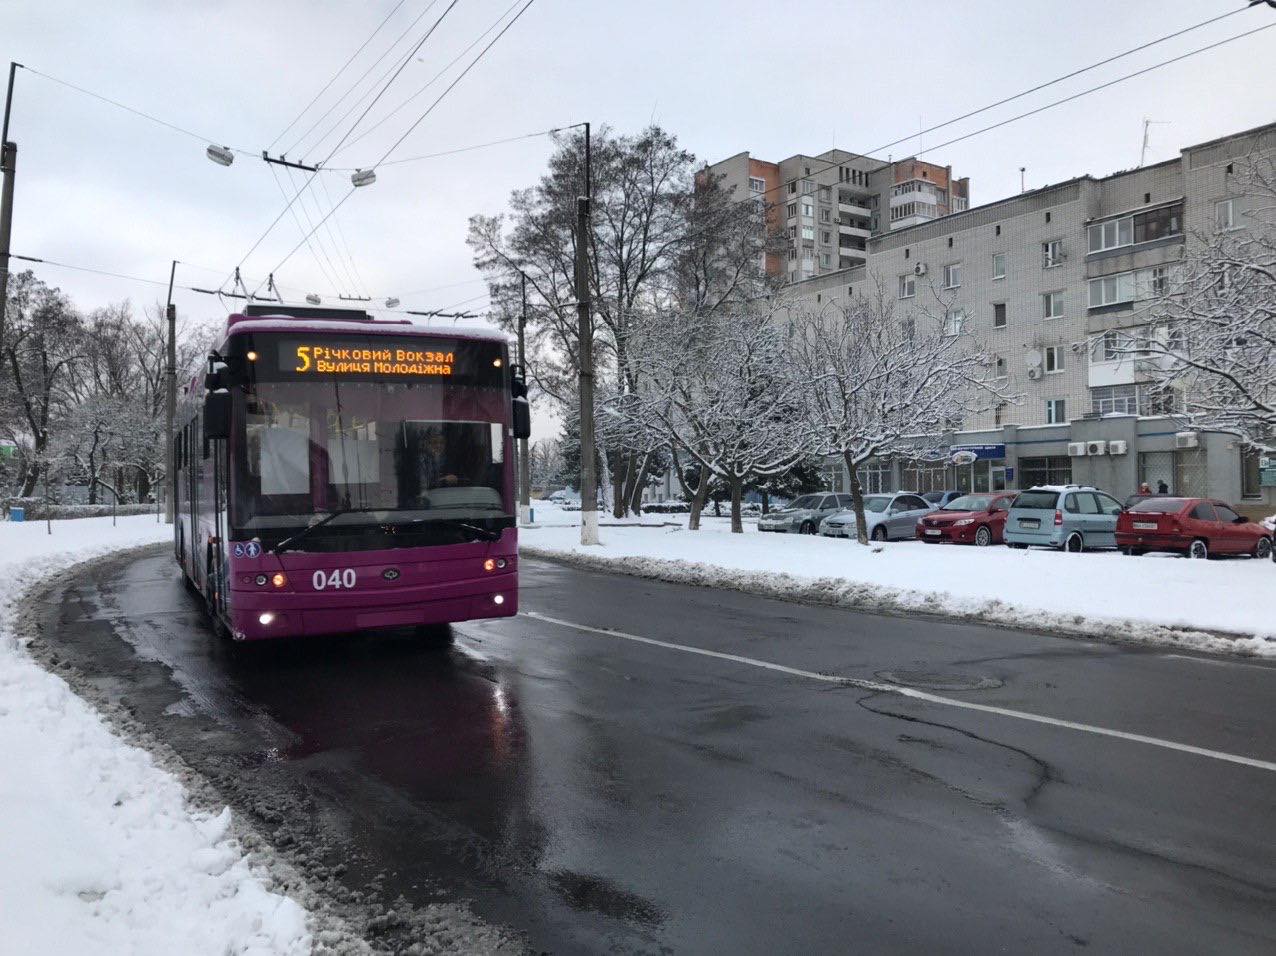 Нарушений в работе общественного транспорта в Кременчуге нет - мэрия